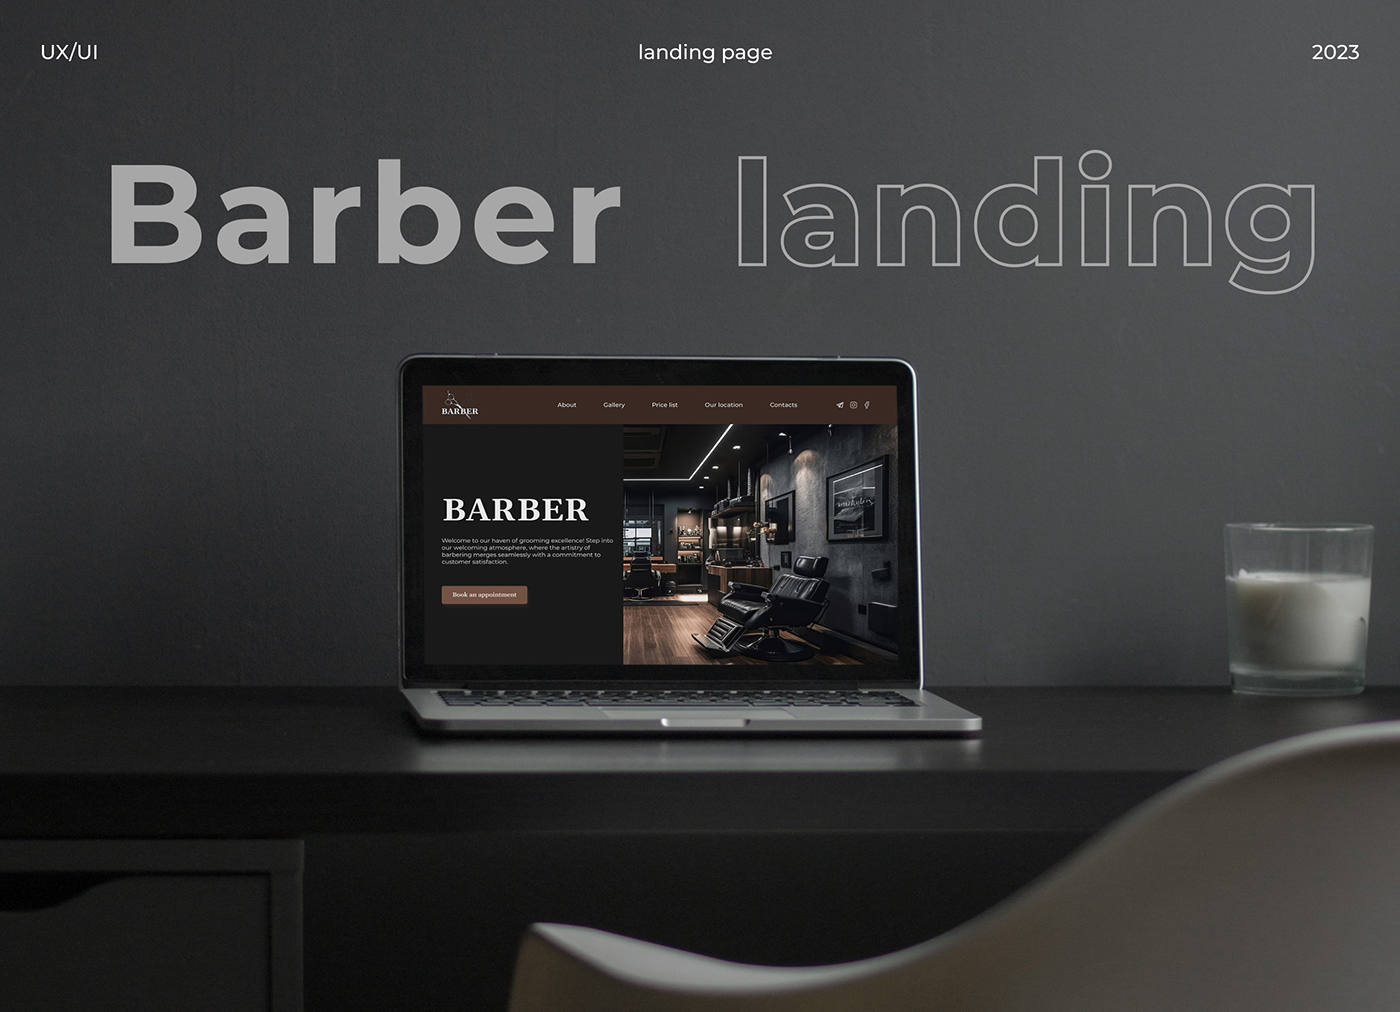 design ux/ui Figma landing page UX design ui design barber barbershop Web Design  user interface design